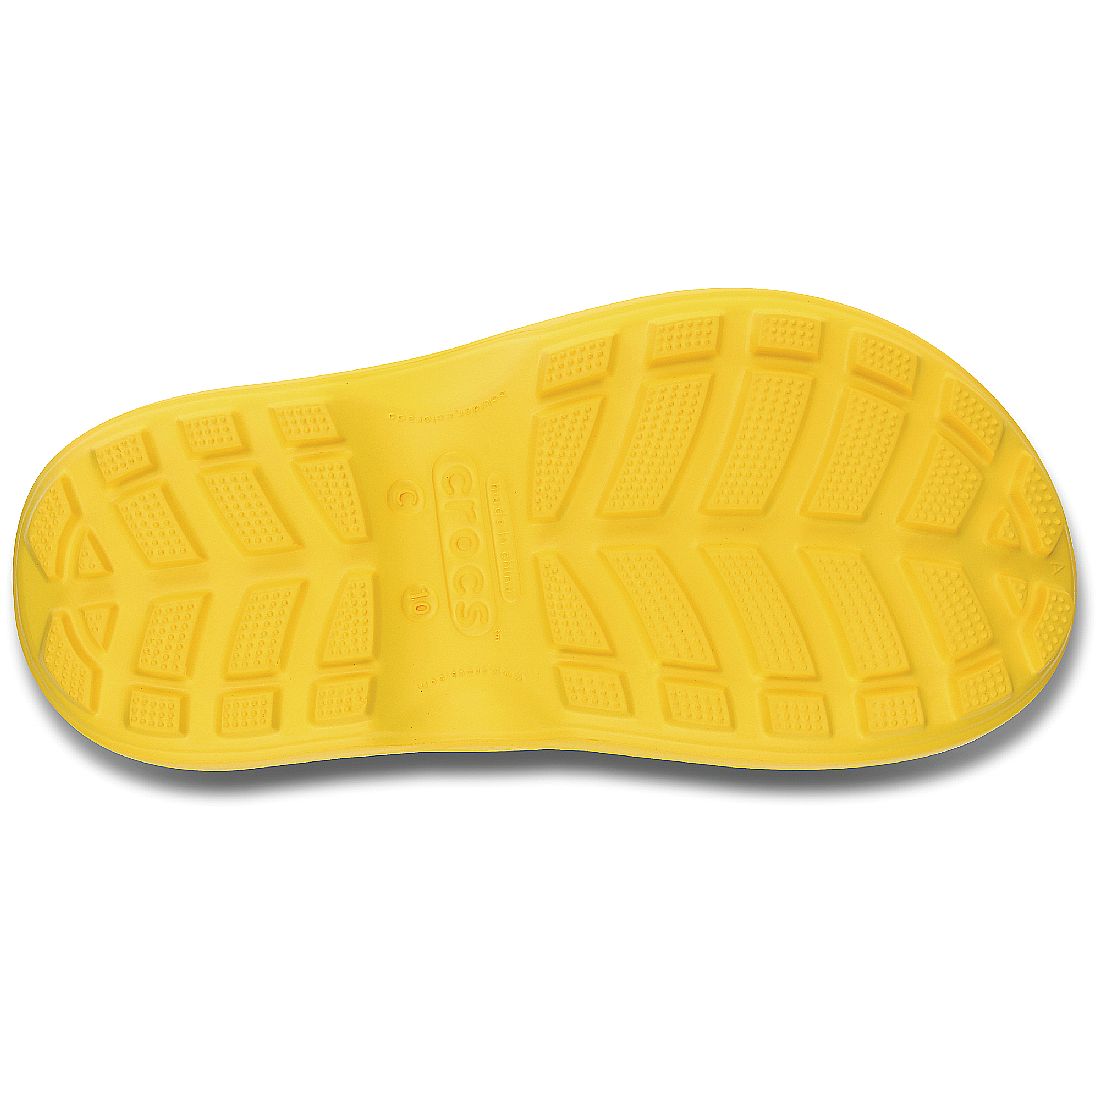 Crocs Handle It Rain Boot Kids Gummistiefel Regenstiefel Kinder 12803 gelb